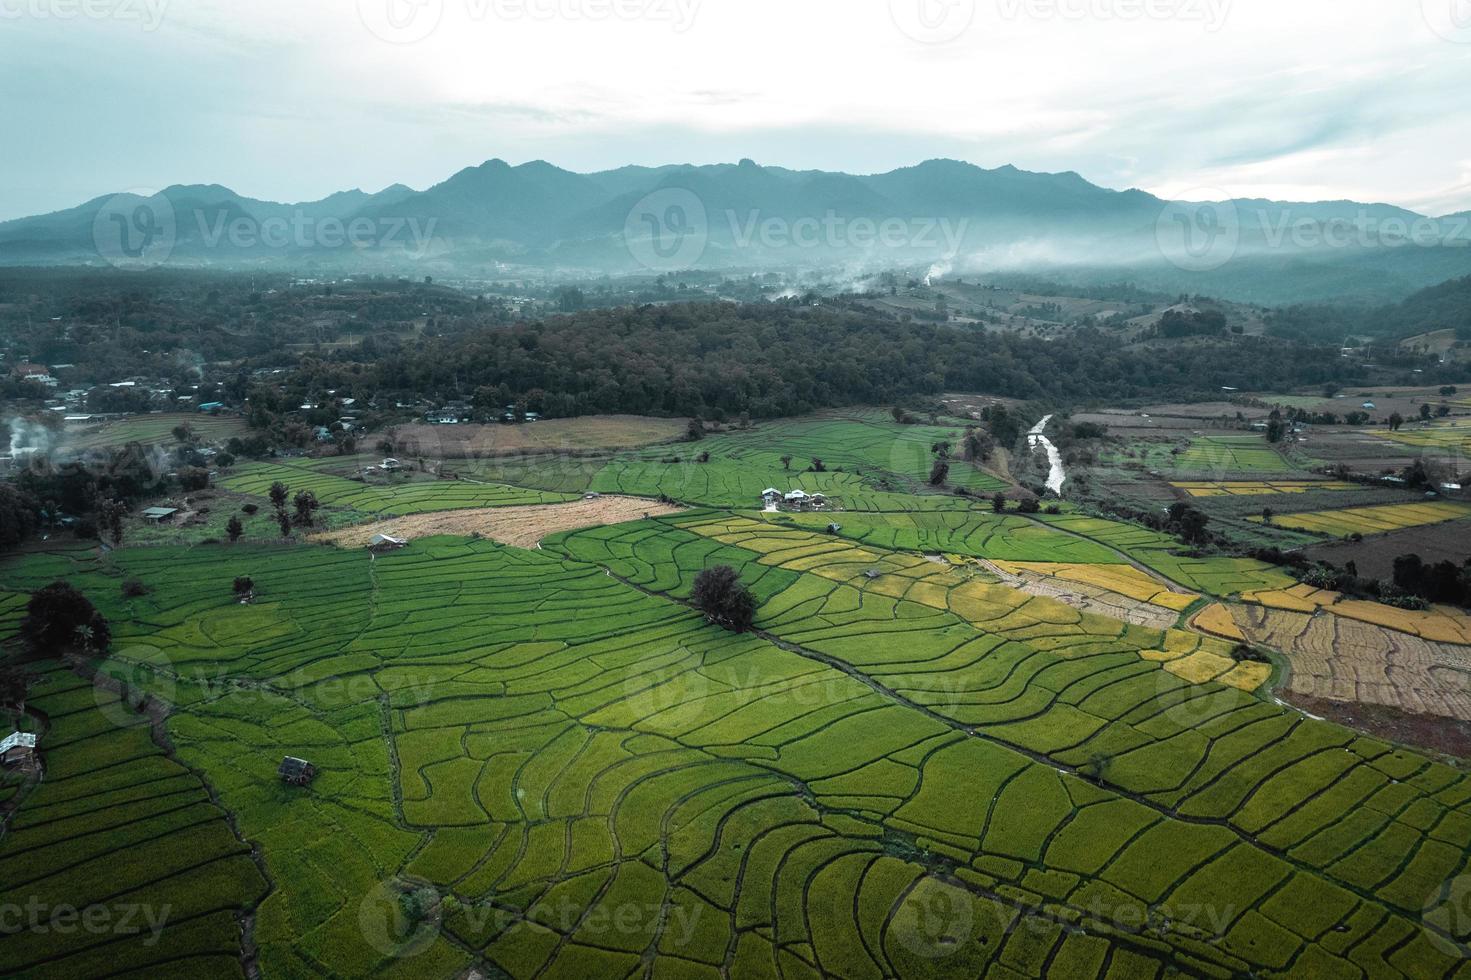 risaie verdi e agricoltura vista dall'alto foto